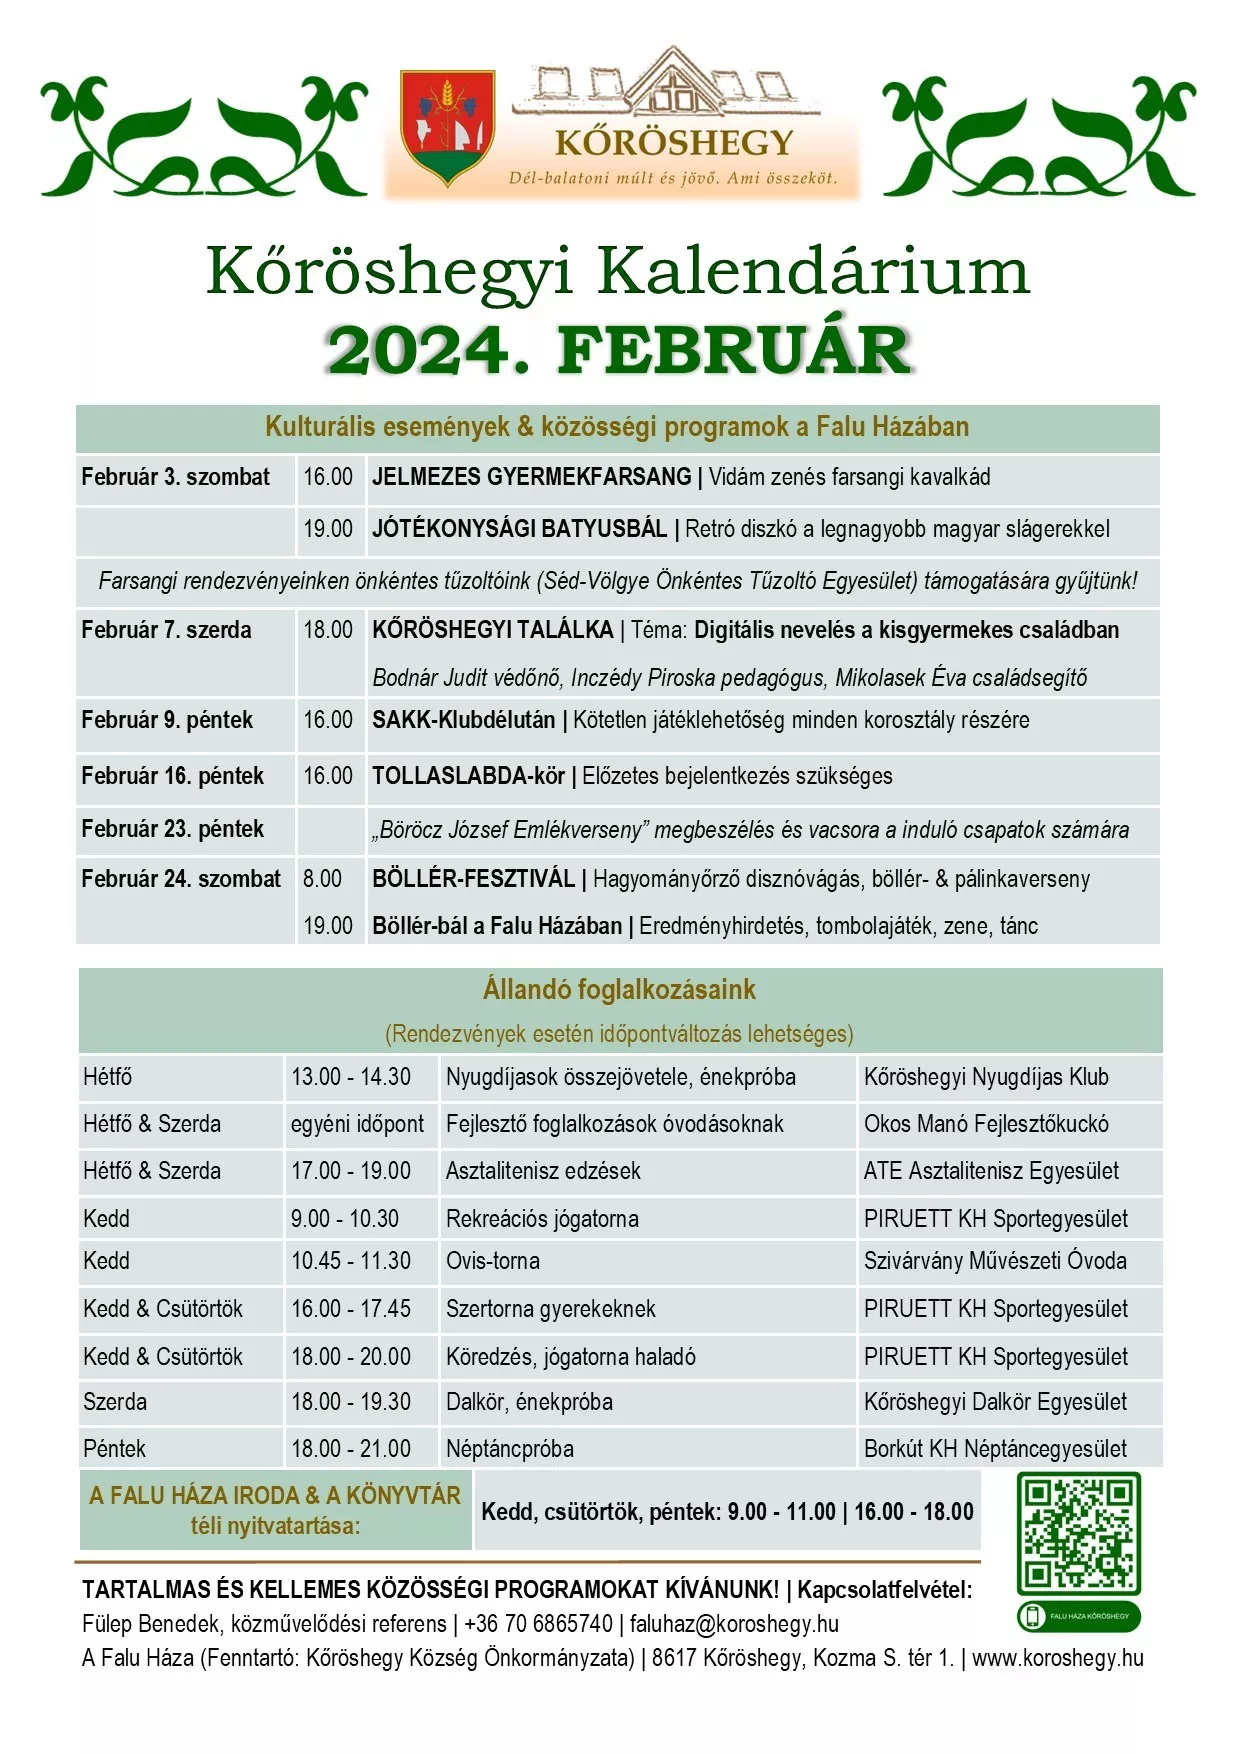 Kőröshegyi kalendárium 2024 február